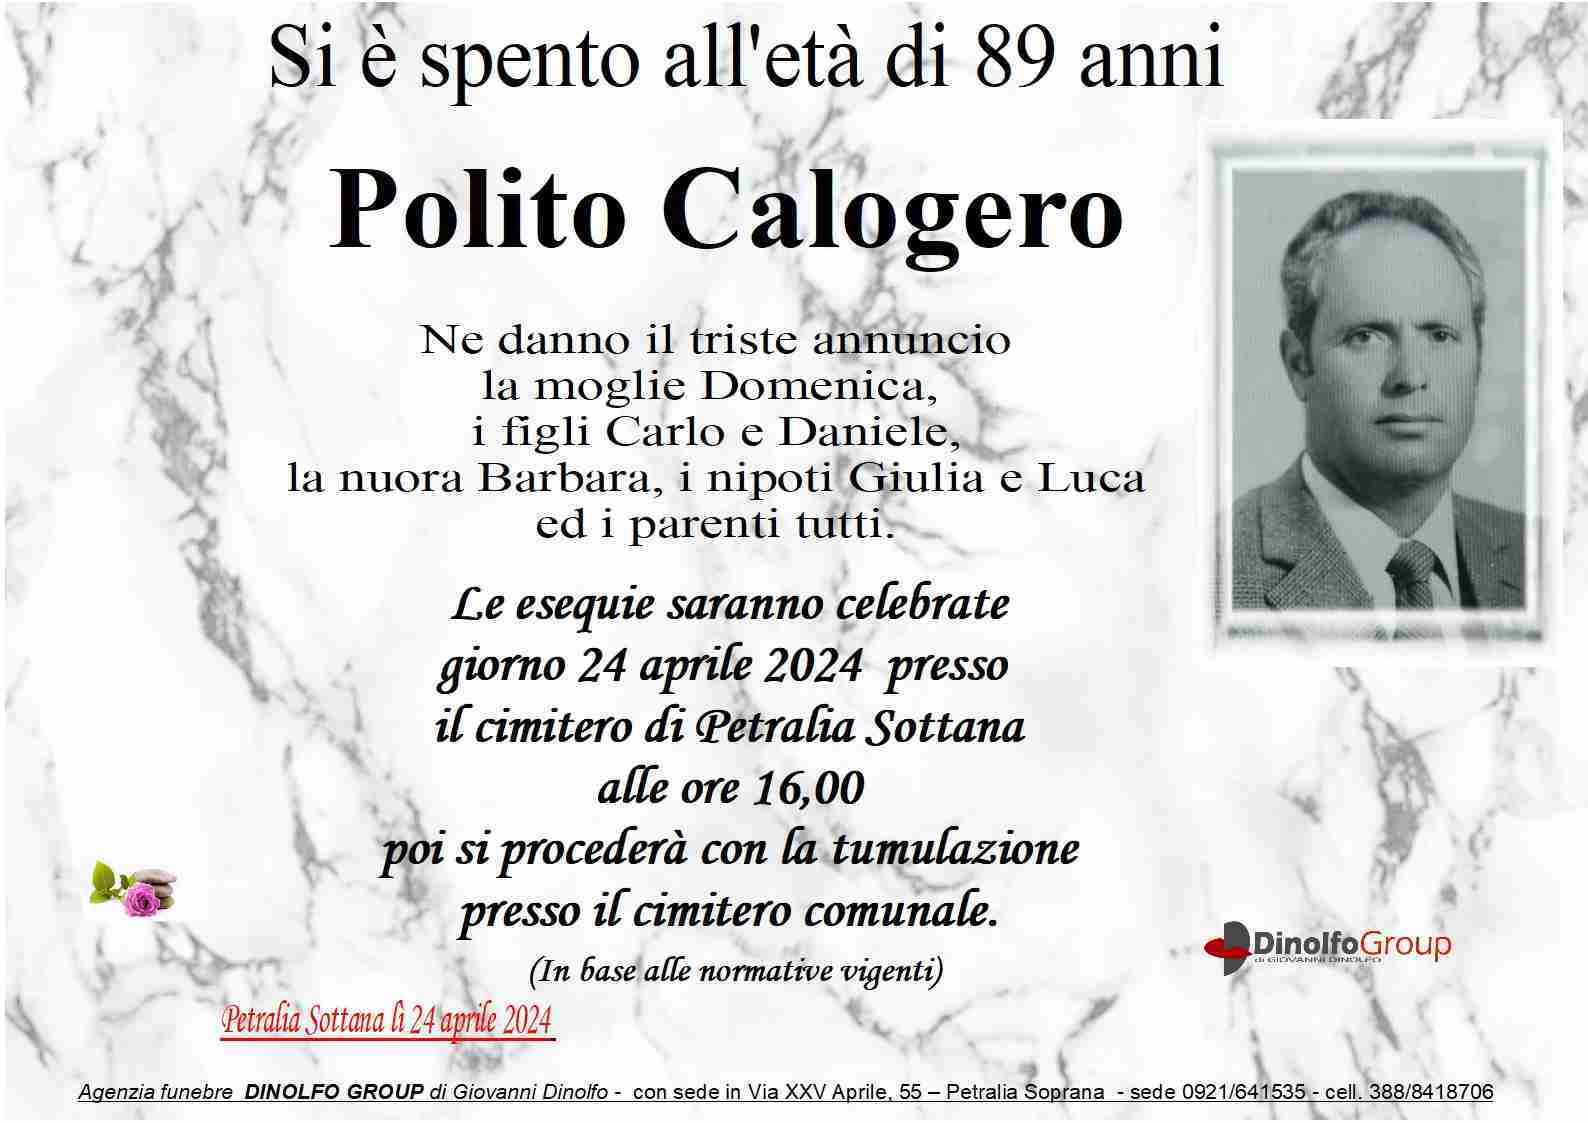 Calogero Polito